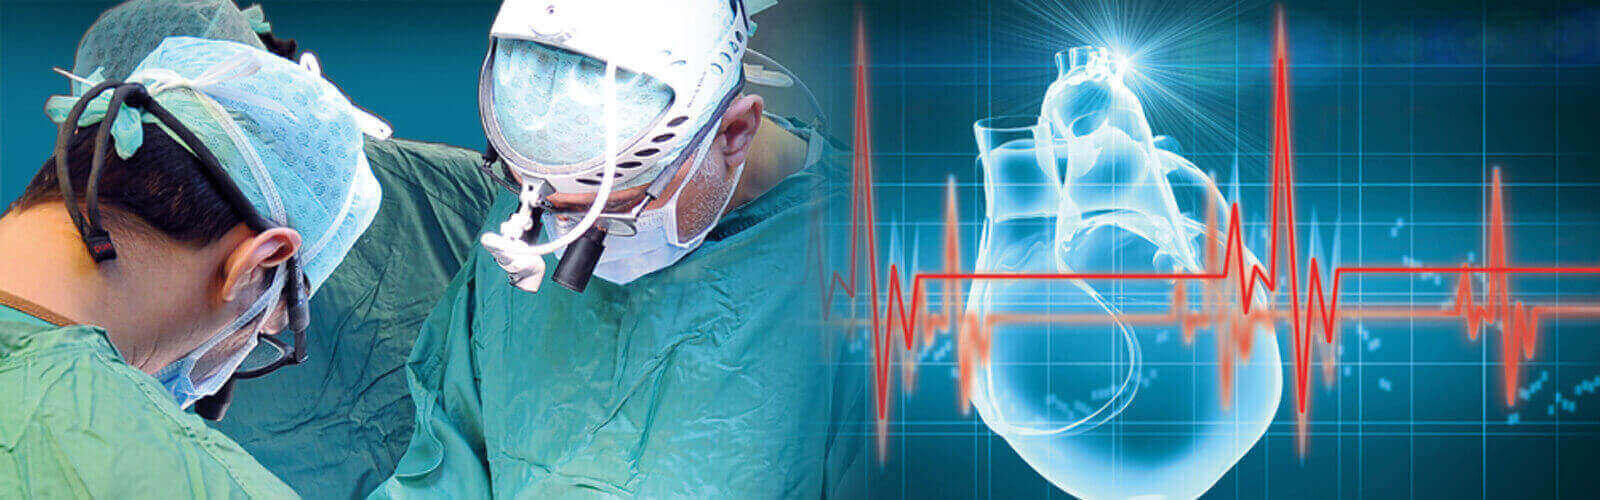 Coronary Angioplasty Surgery in New Hampshire